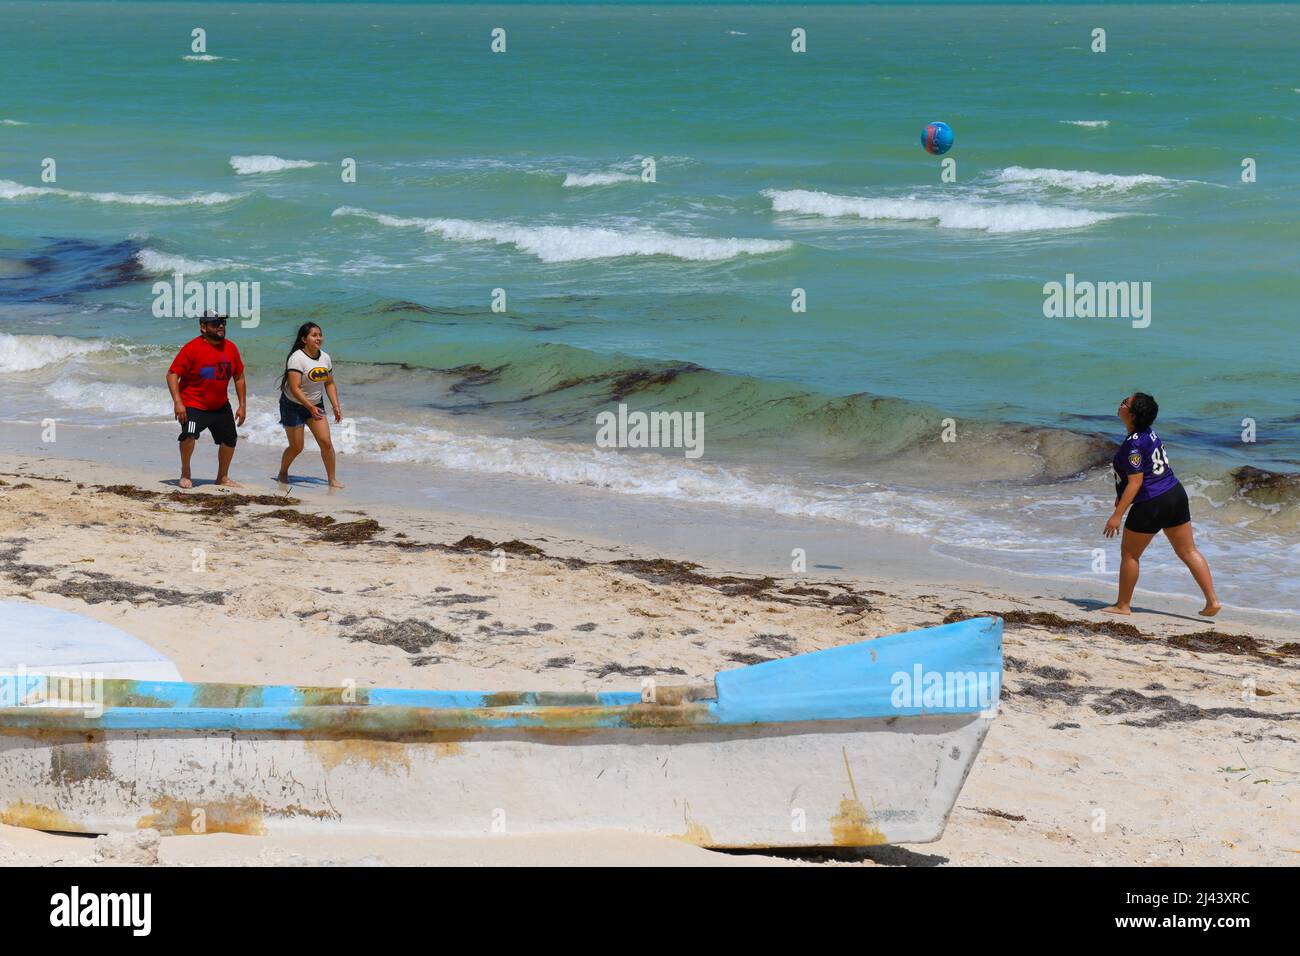 Les habitants s'amusent sur la plage, petite ville côtière de Chuburna, Yucatan, Mexique Banque D'Images